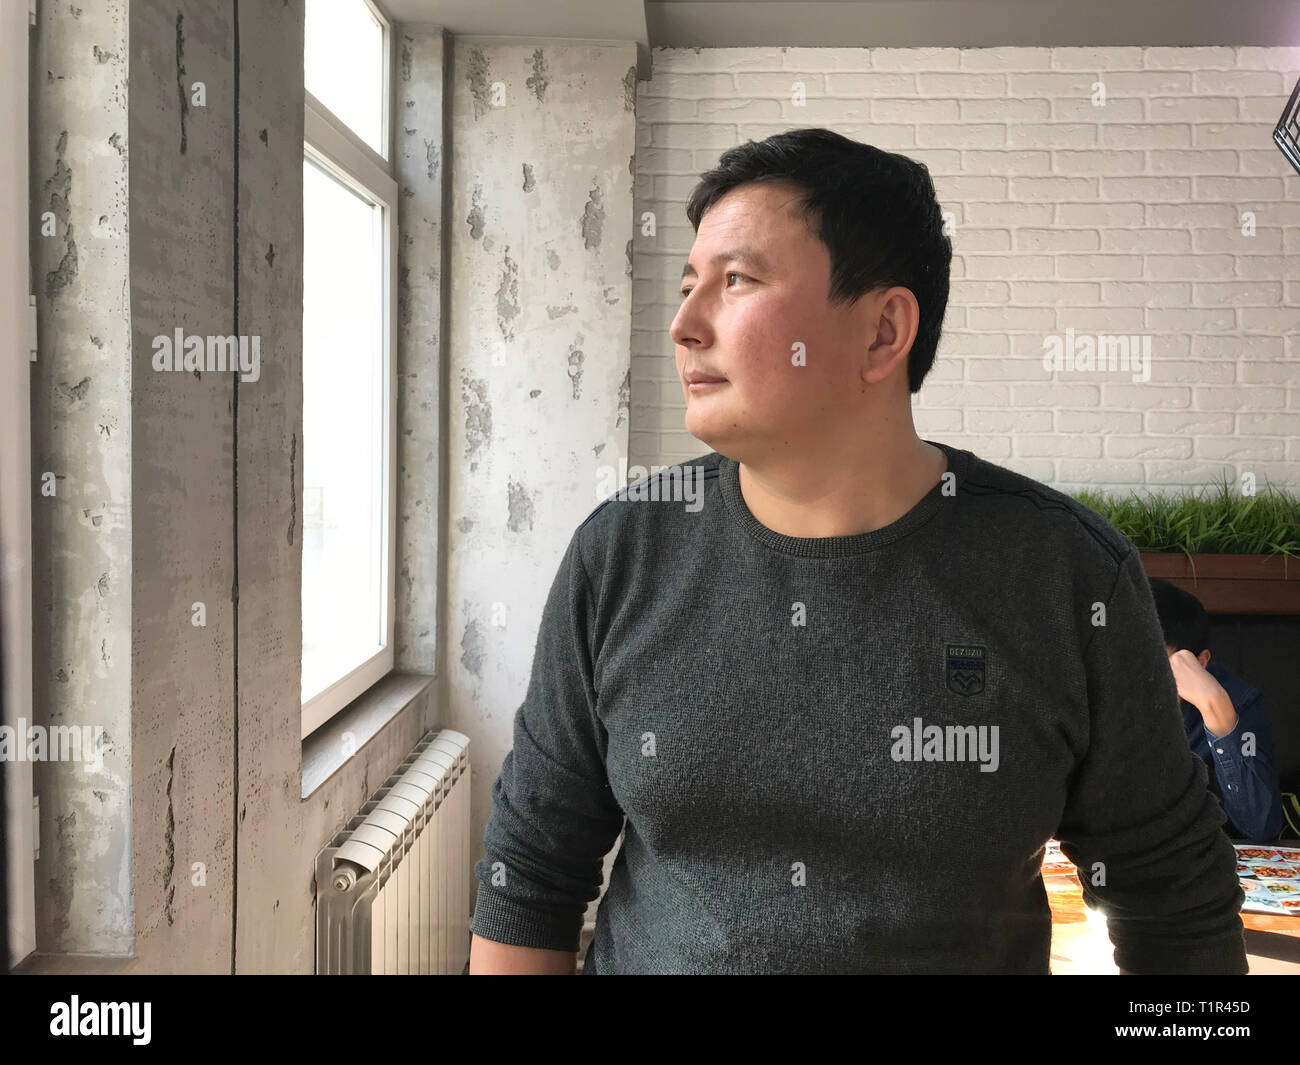 Almaty, Kazakhstan. 23 Nov, 2018. Kairat Samarkan, un ex detenuto di un cinese per la rieducazione camp, ammesso ad Almaty. Egli proviene dal Xinjiang, una provincia di disordini nella Cina occidentale. Egli vive ora nella vicina Kazakistan (a dpa storia: la Cina e gli uiguri) Credito: Simina Mistrenau/dpa/Alamy Live News Foto Stock